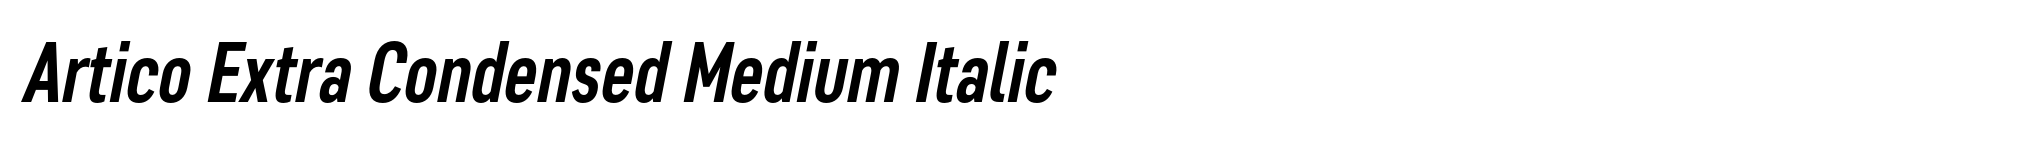 Artico Extra Condensed Medium Italic image